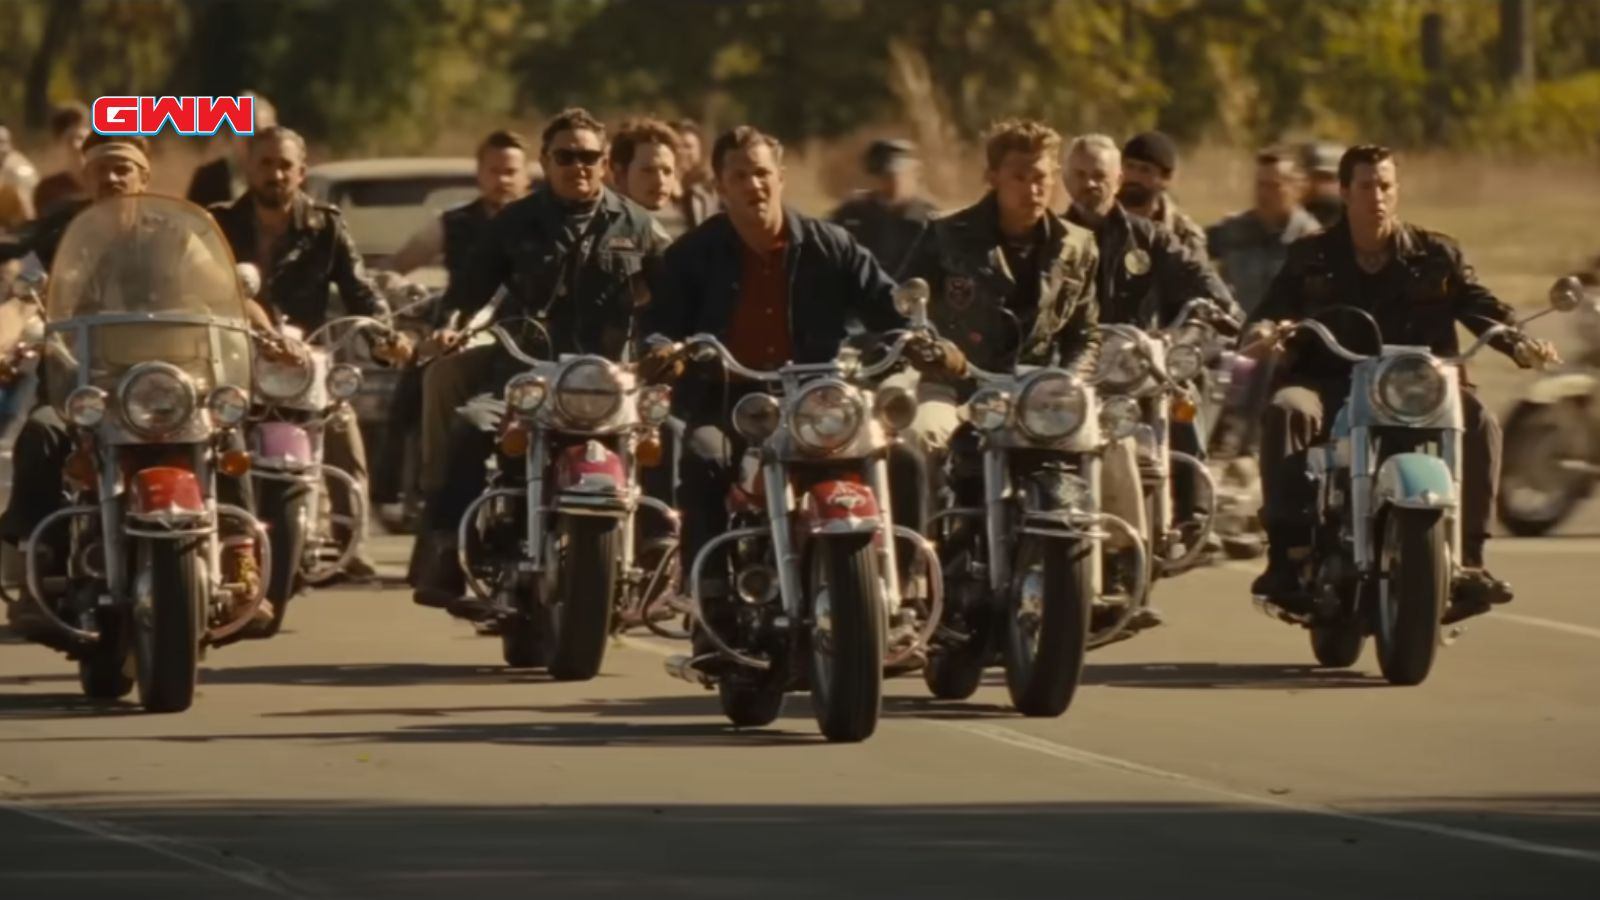 Un grupo de motociclistas viajan juntos en motocicleta por una carretera.